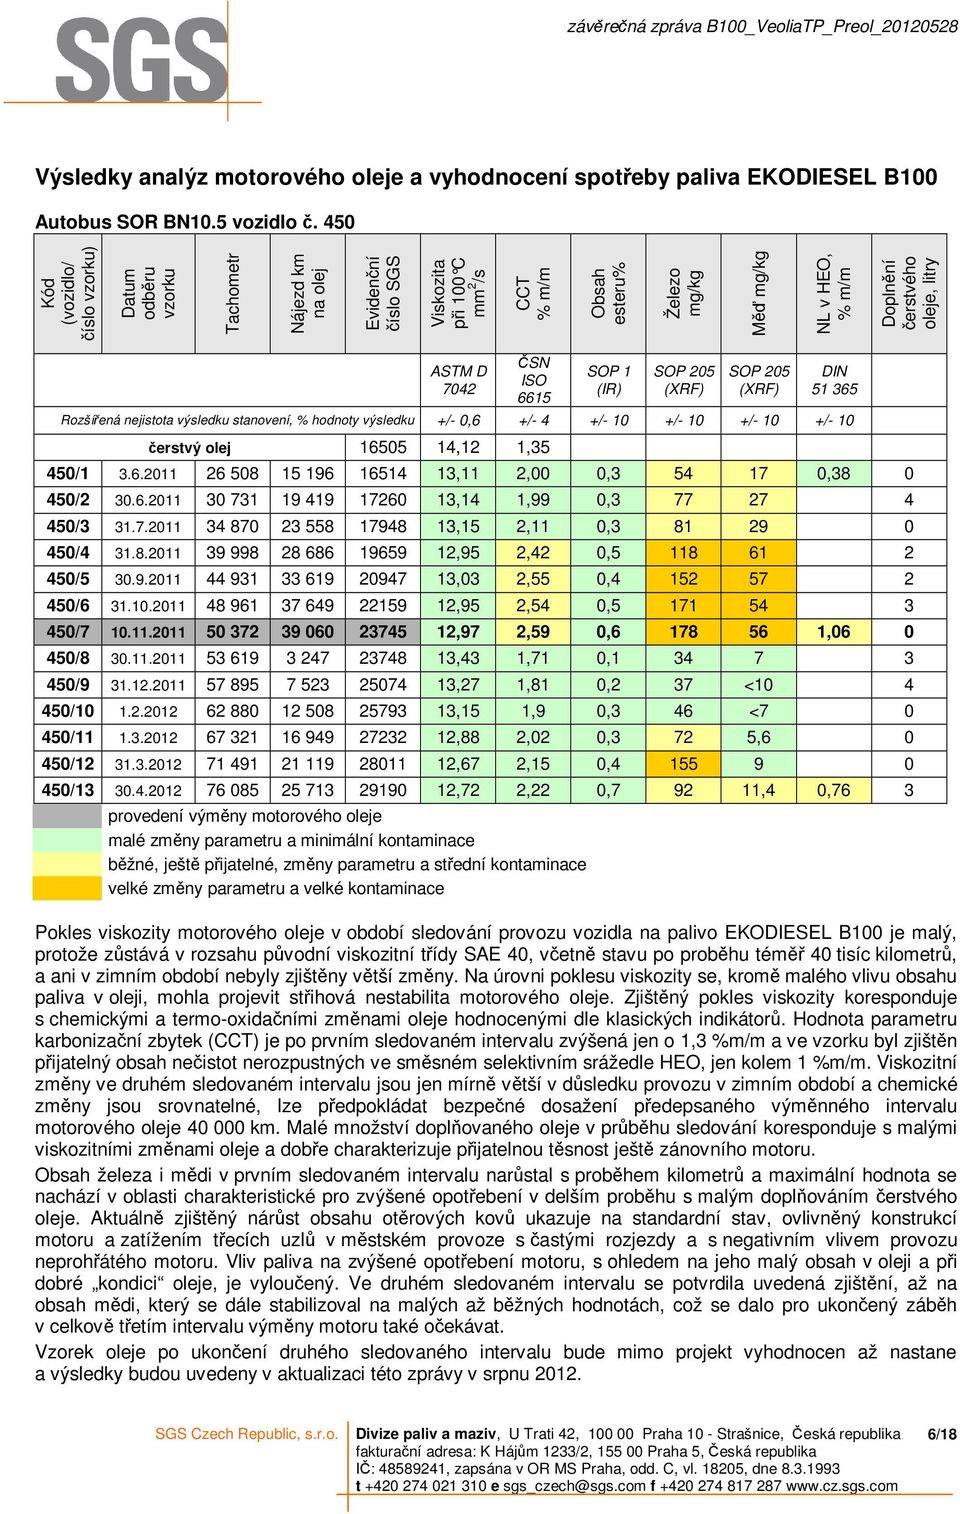 čerstvého oleje, litry ASTM D 7042 ČSN ISO 6615 SOP 1 (IR) SOP 205 (XRF) SOP 205 (XRF) DIN 51 365 Rozšířená nejistota výsledku stanovení, % hodnoty výsledku +/- 0,6 +/- 4 +/- 10 +/- 10 +/- 10 +/- 10